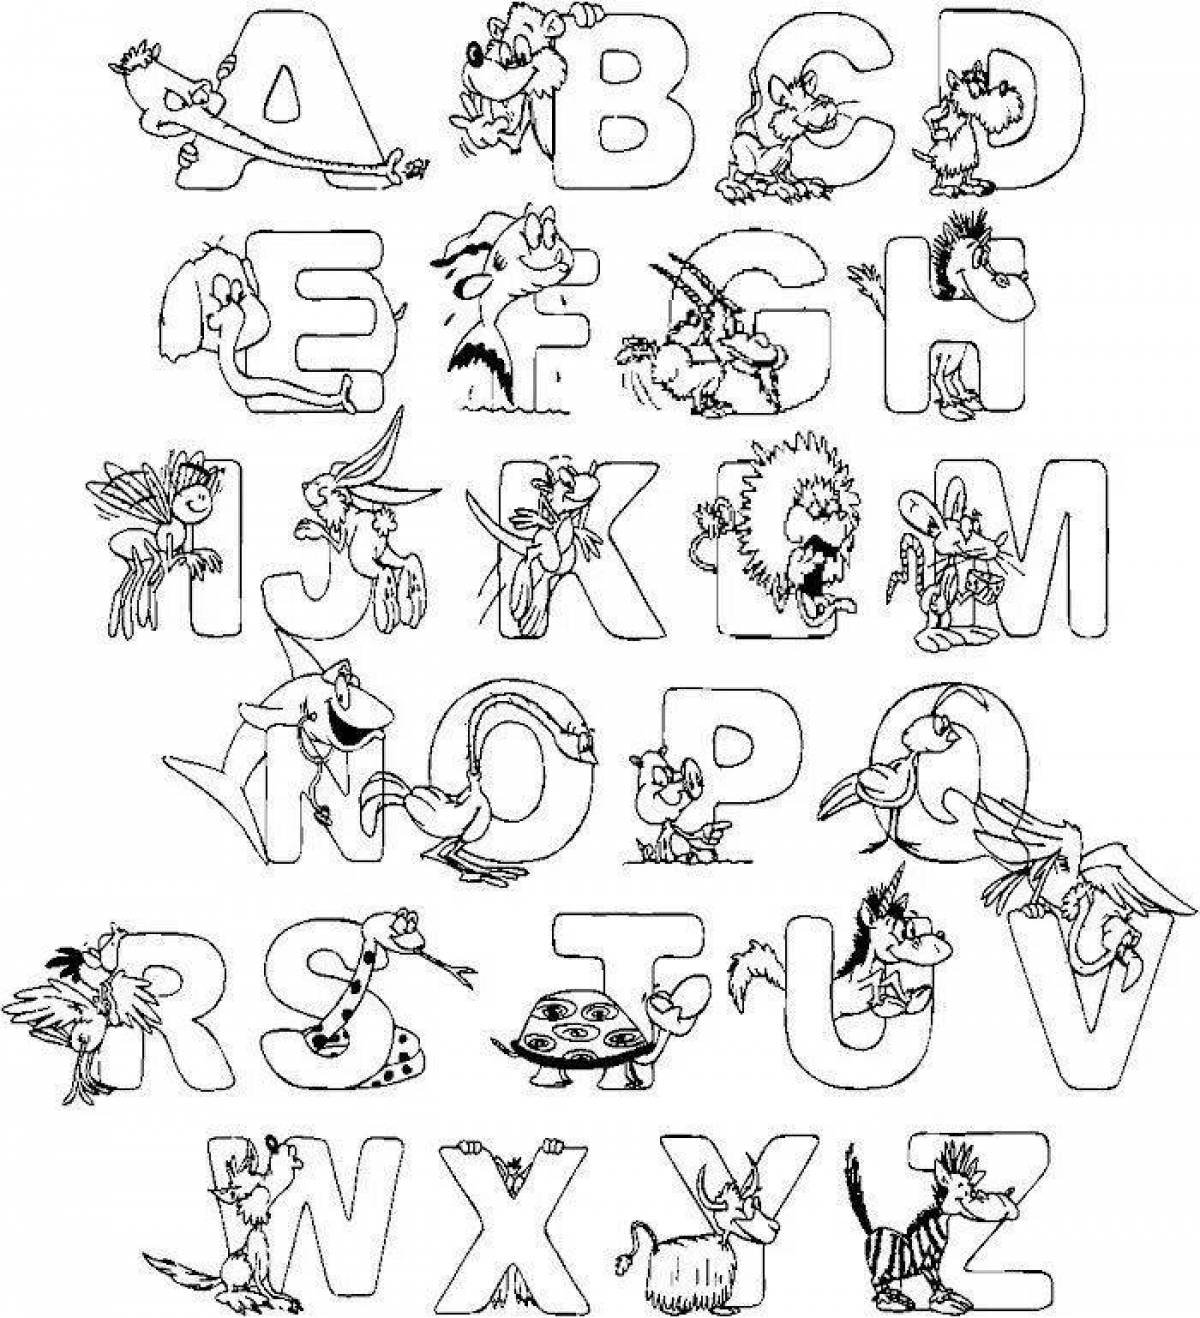 Азбука и алфавит для малышей, игры про алфавит для детей